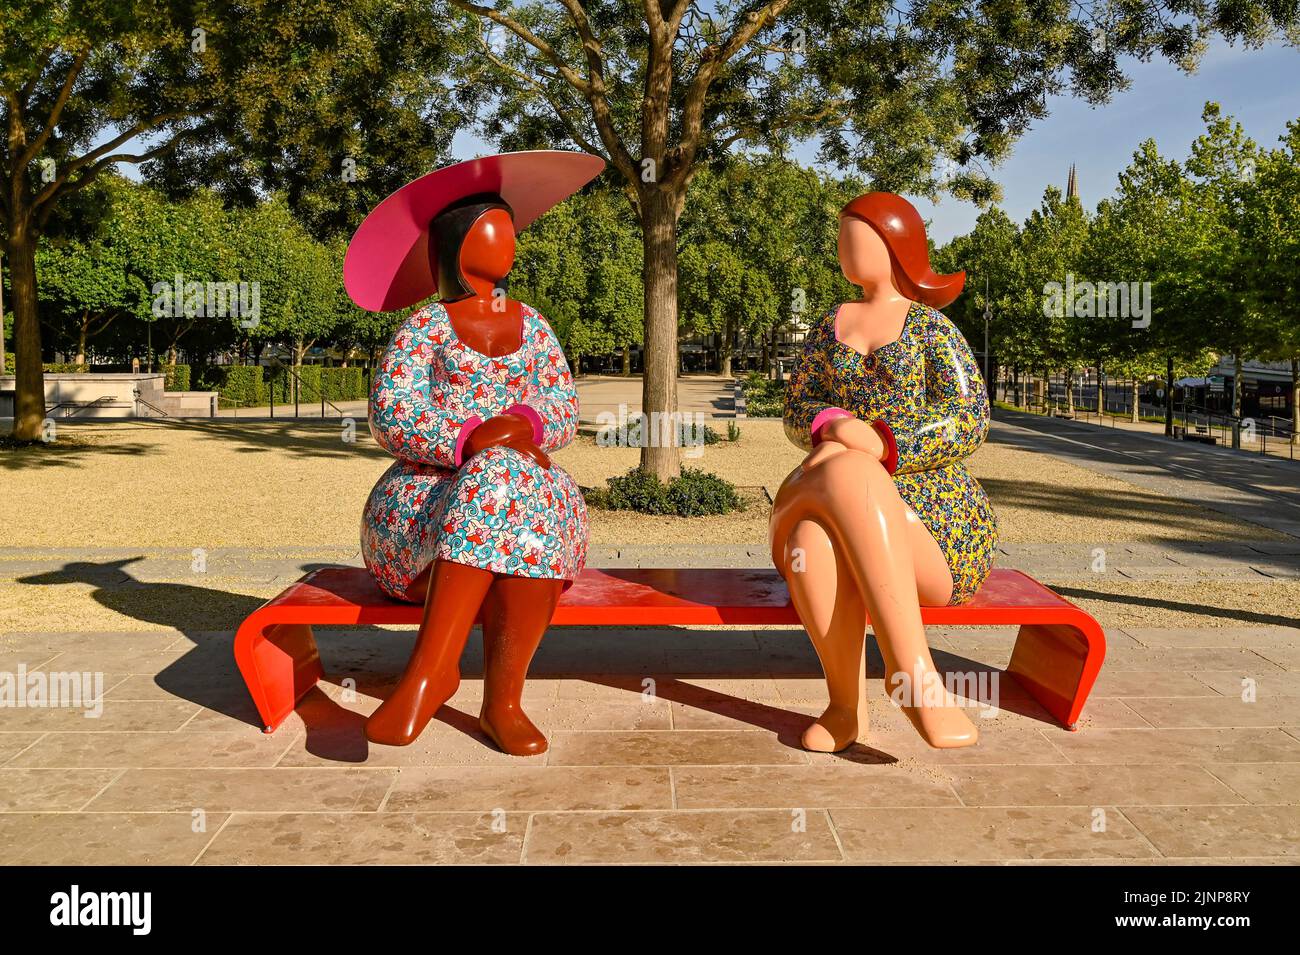 The sculpture 'Les deux femmes' by Franck Ayroles at the Place de la Brèche, Niort, France Stock Photo